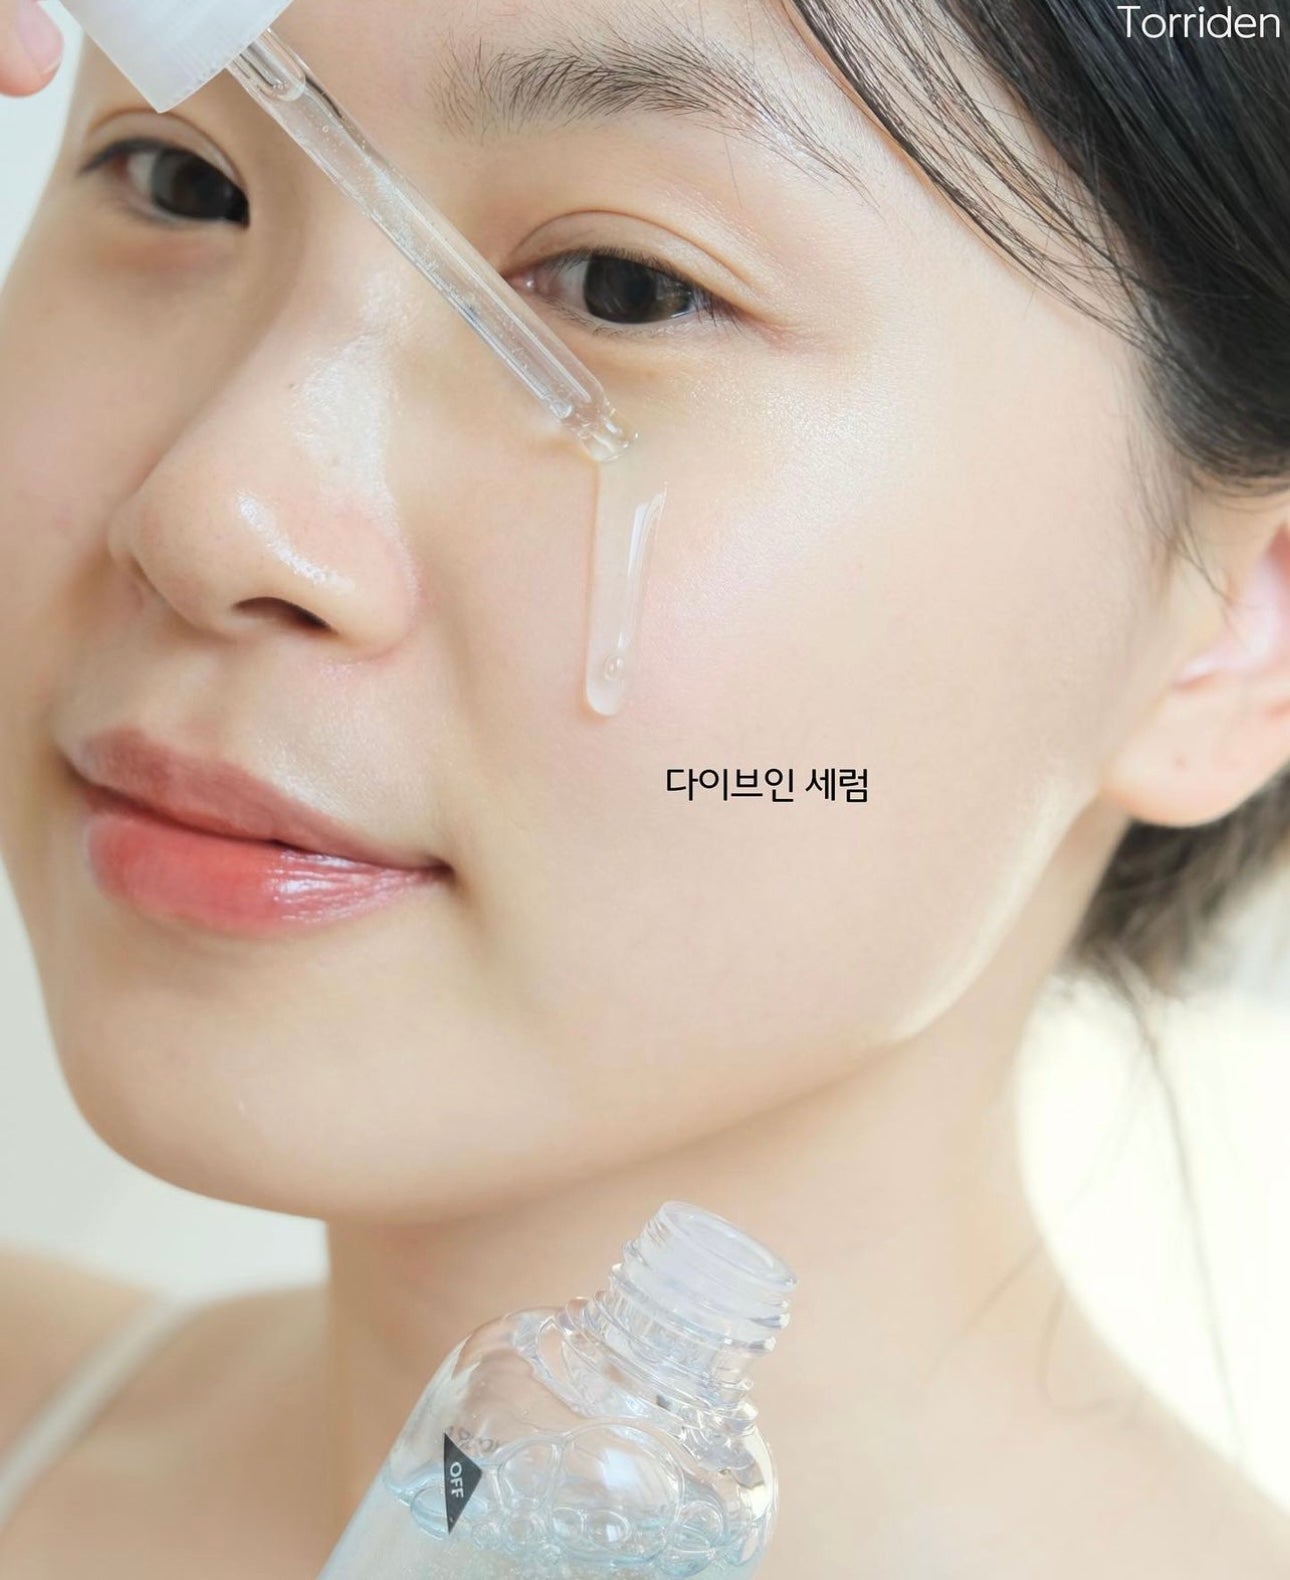 韓國精華排行榜第一名🥇「3秒精華」 Torriden低分子透明質酸深層強效補水抗敏精華50ml☁️